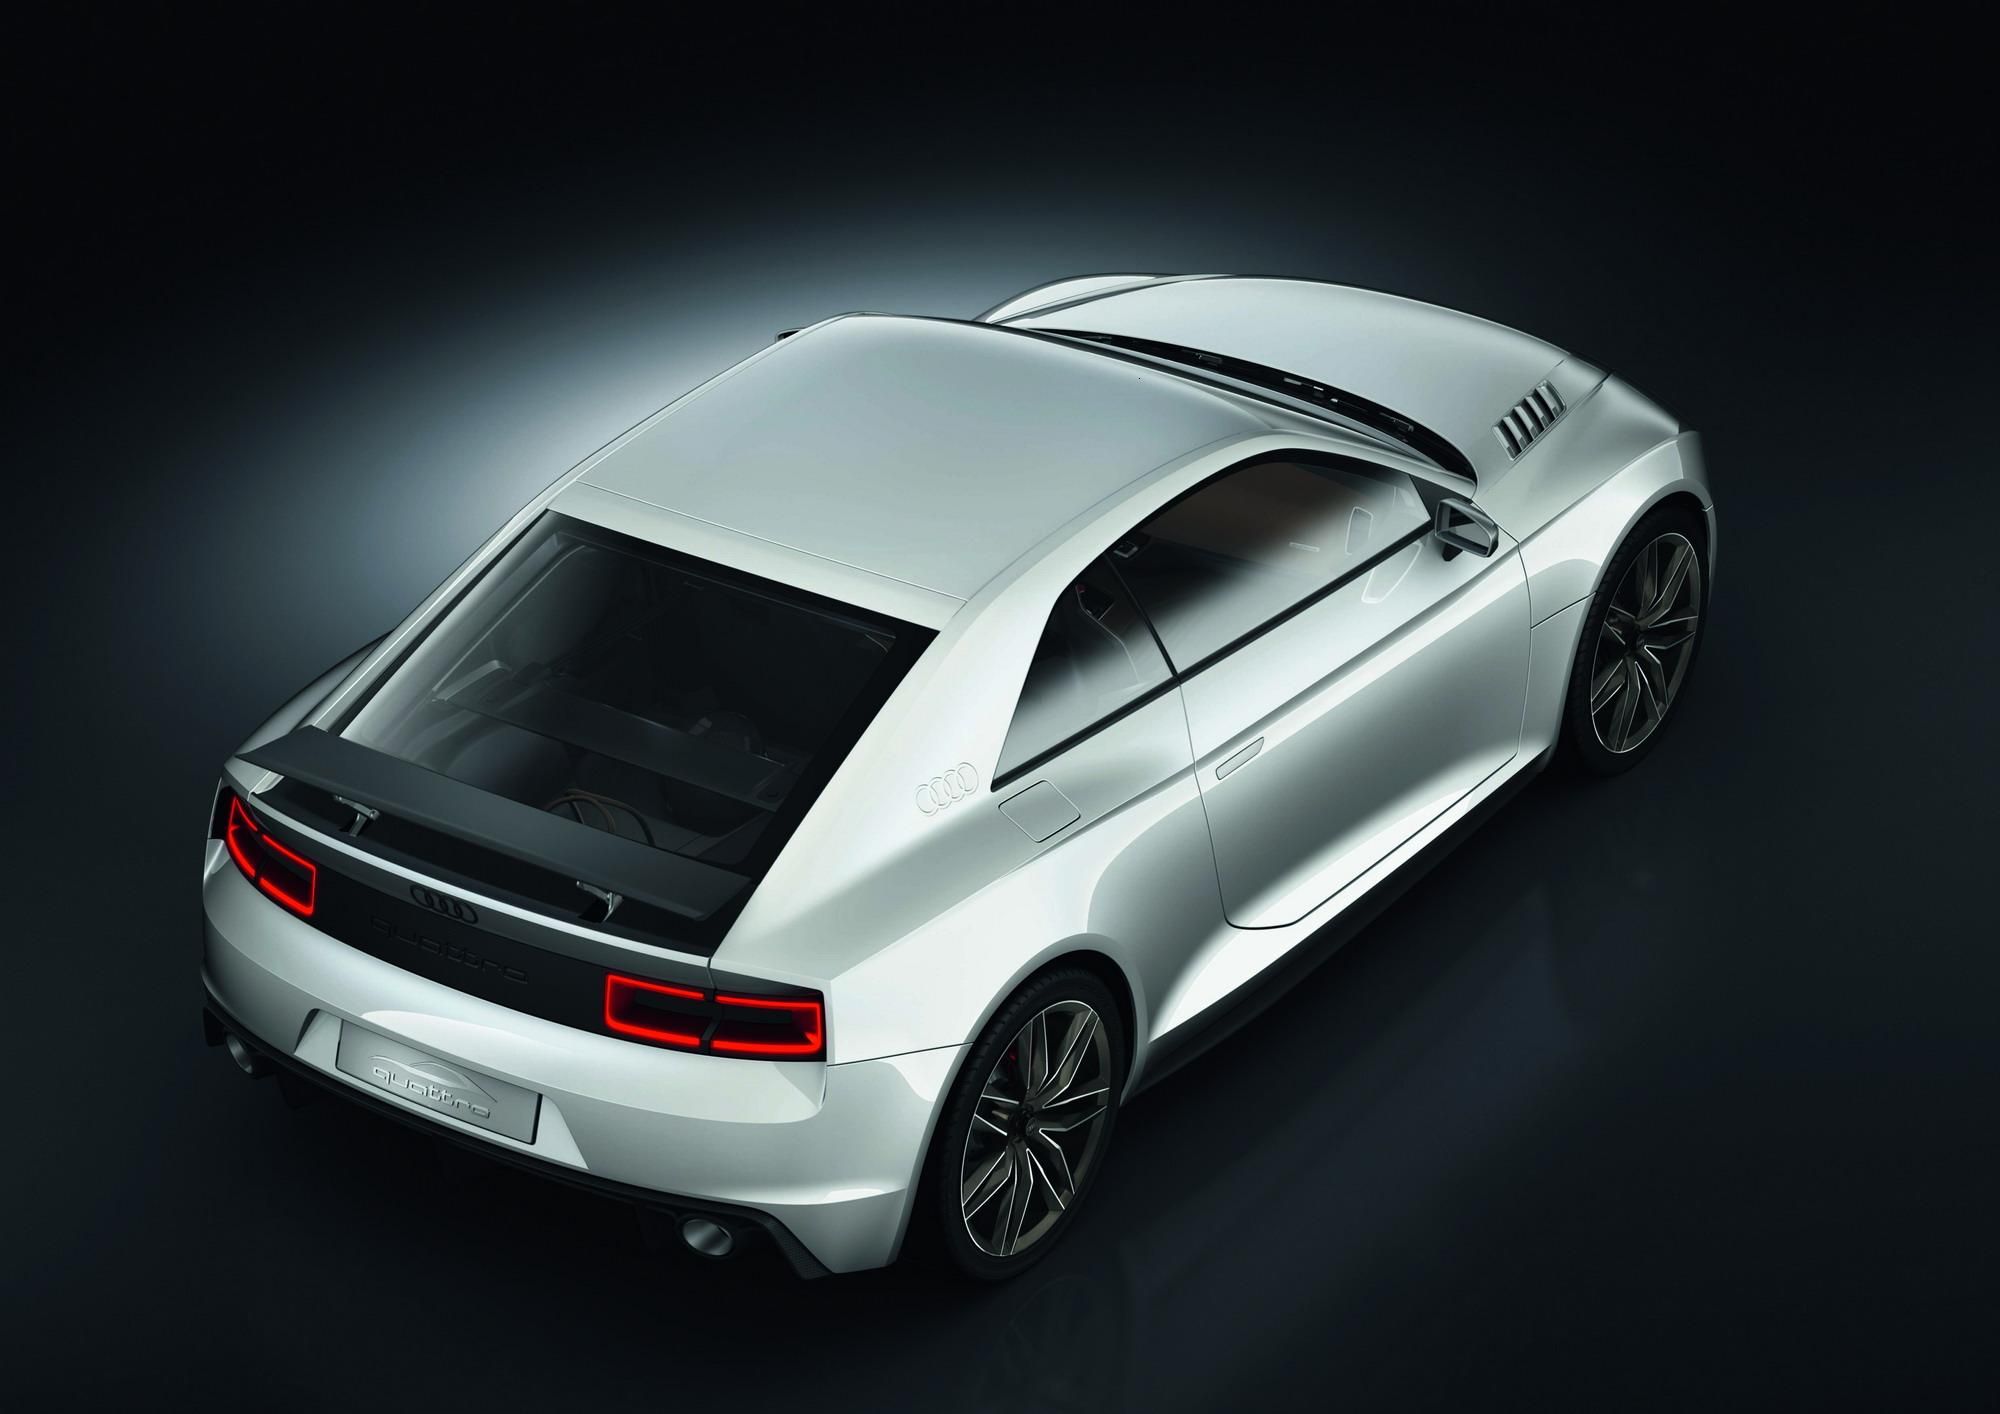 2011 Audi Quattro Concept 